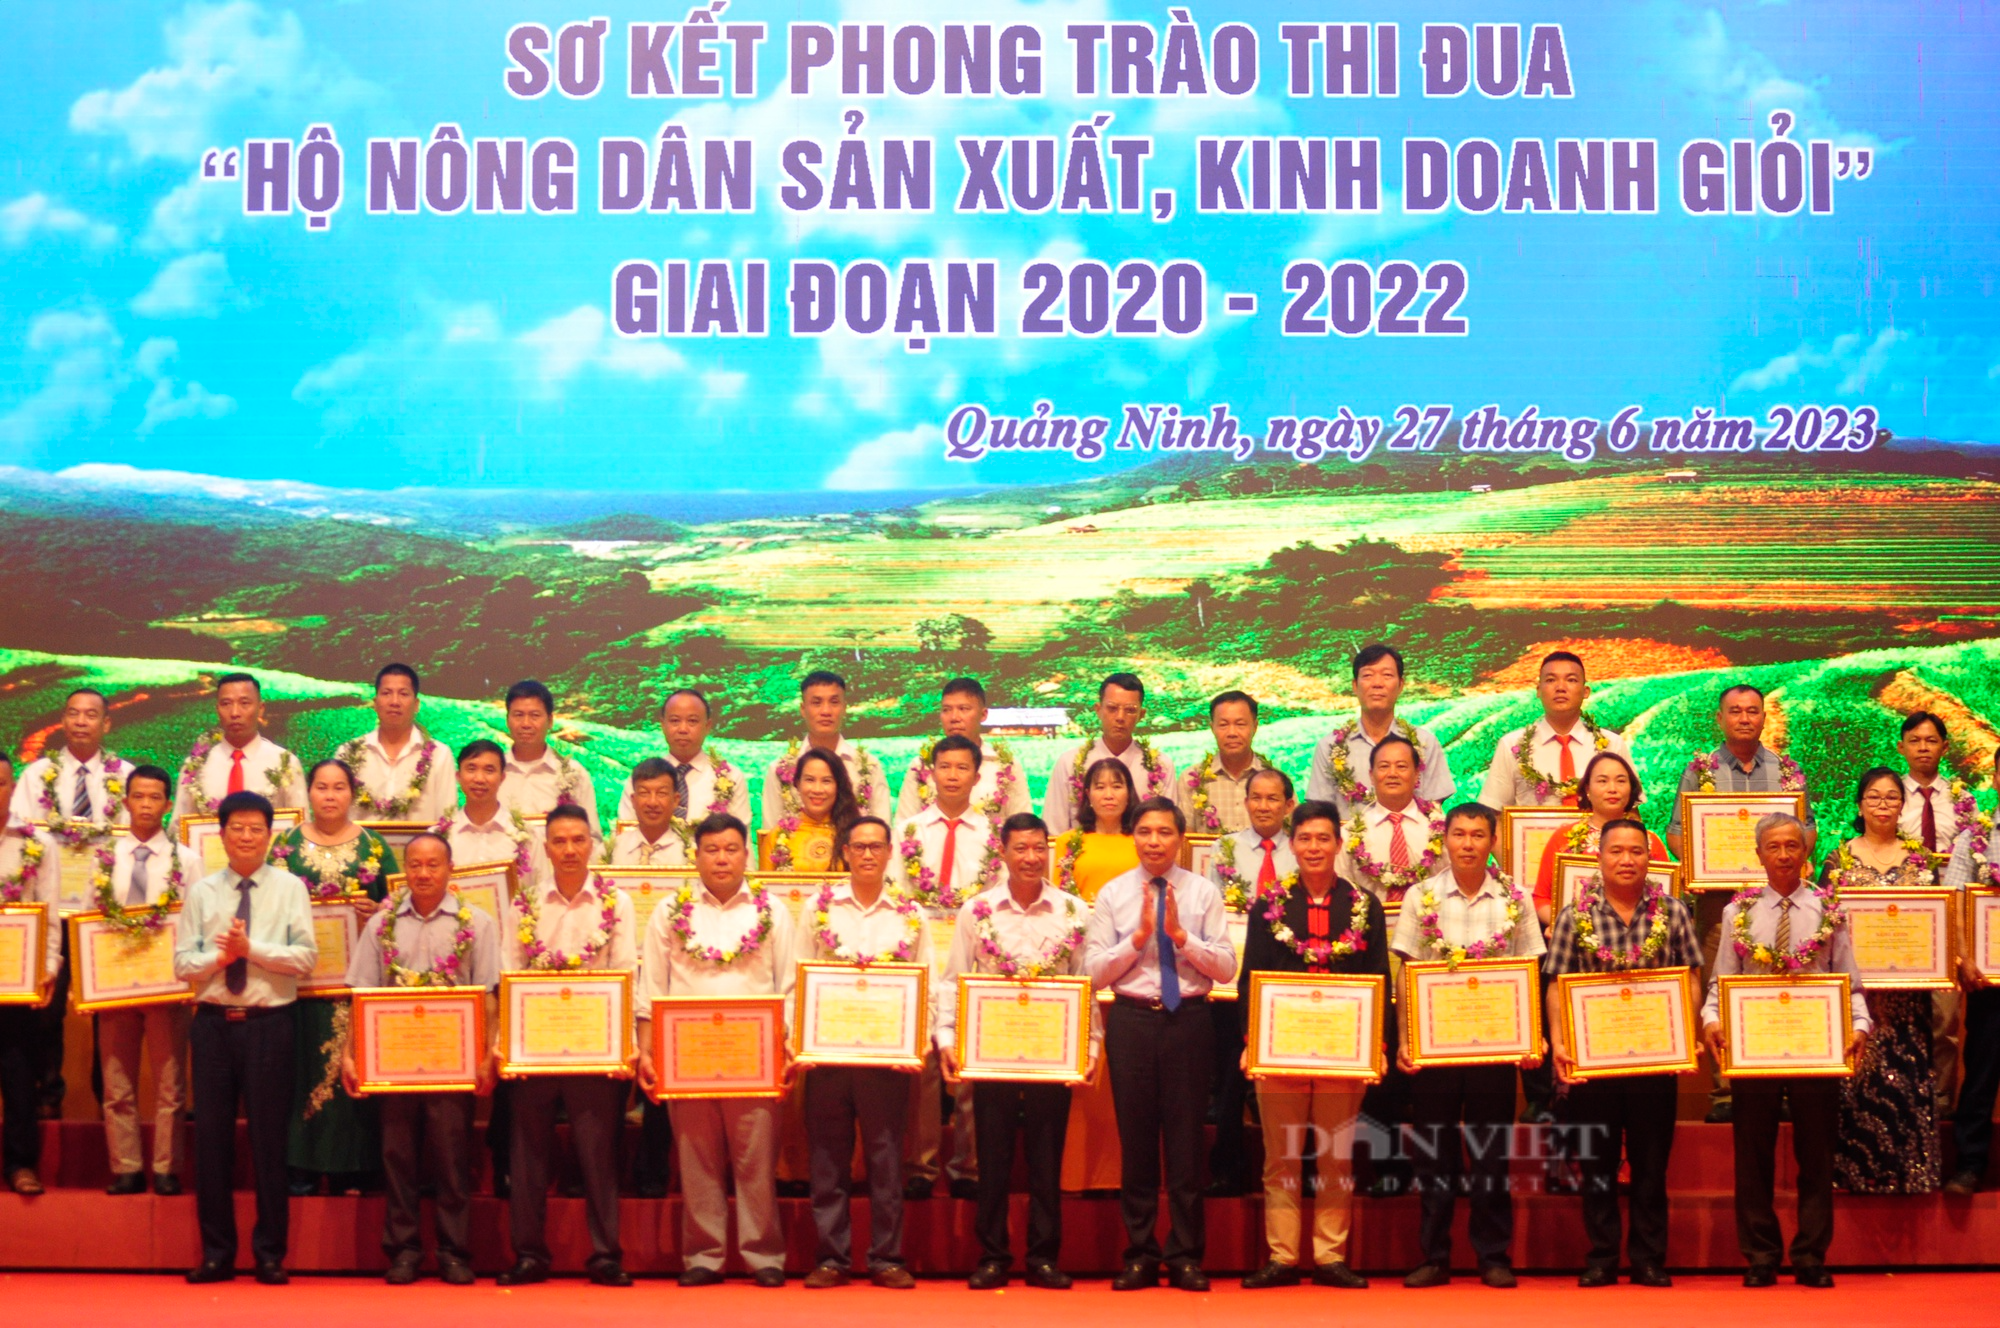 Trước thềm Đại hội Hội Nông dân tỉnh Quảng Ninh, nhìn lại những dấu ấn nổi bật trong nhiệm kỳ 2018-2023 - Ảnh 7.